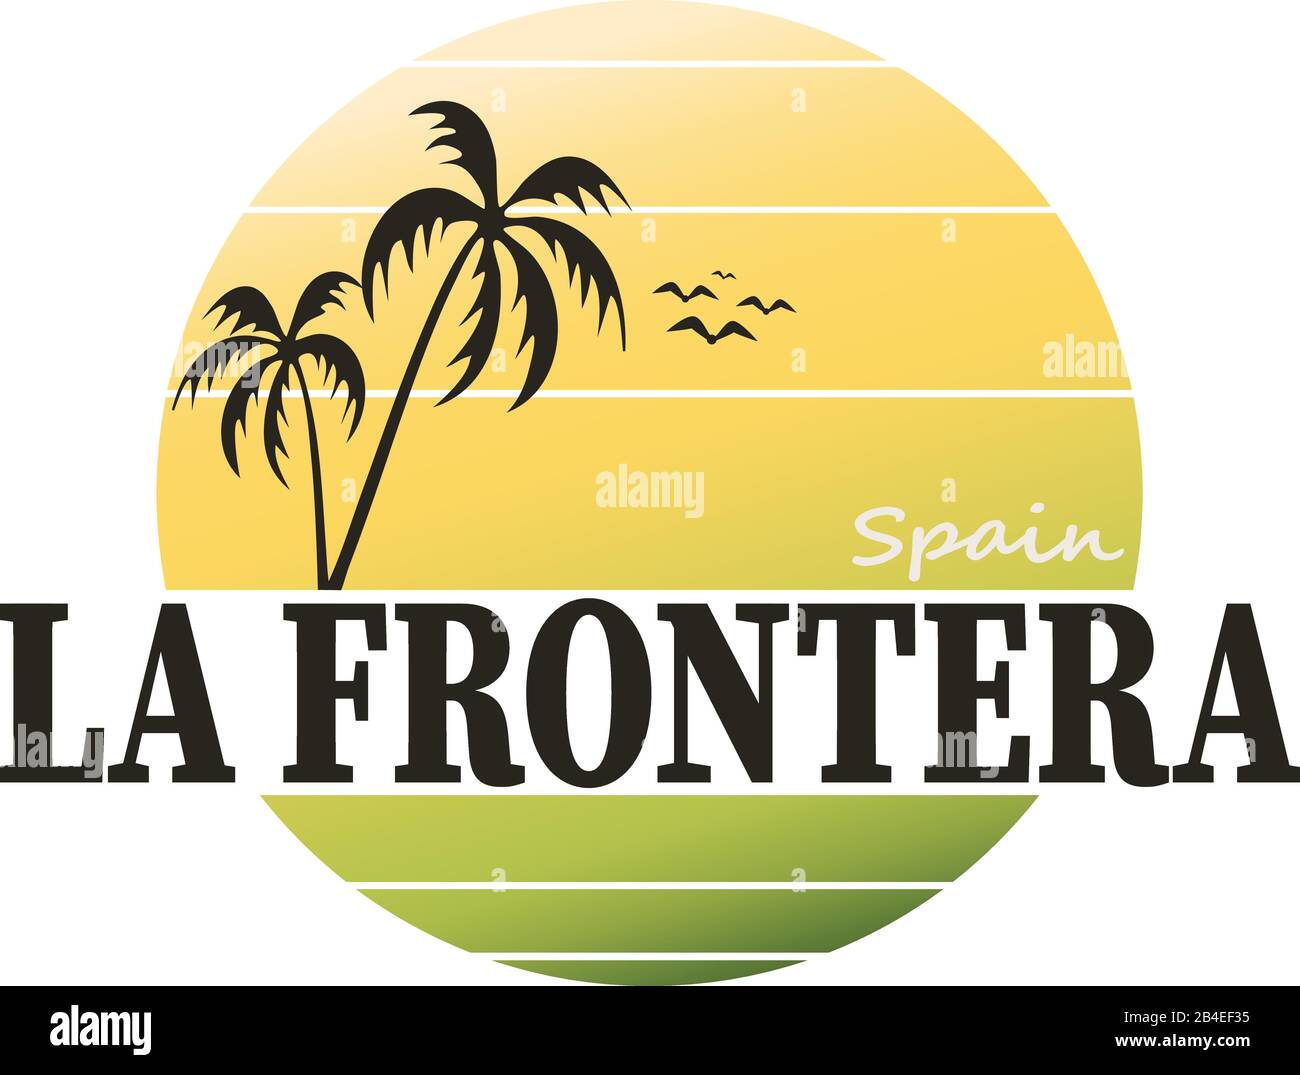 La Frontera Vintage Schild. Handgefertigtes Retro-Label, -Abzeichen oder -Element für Reiseandenken. Stock Vektor